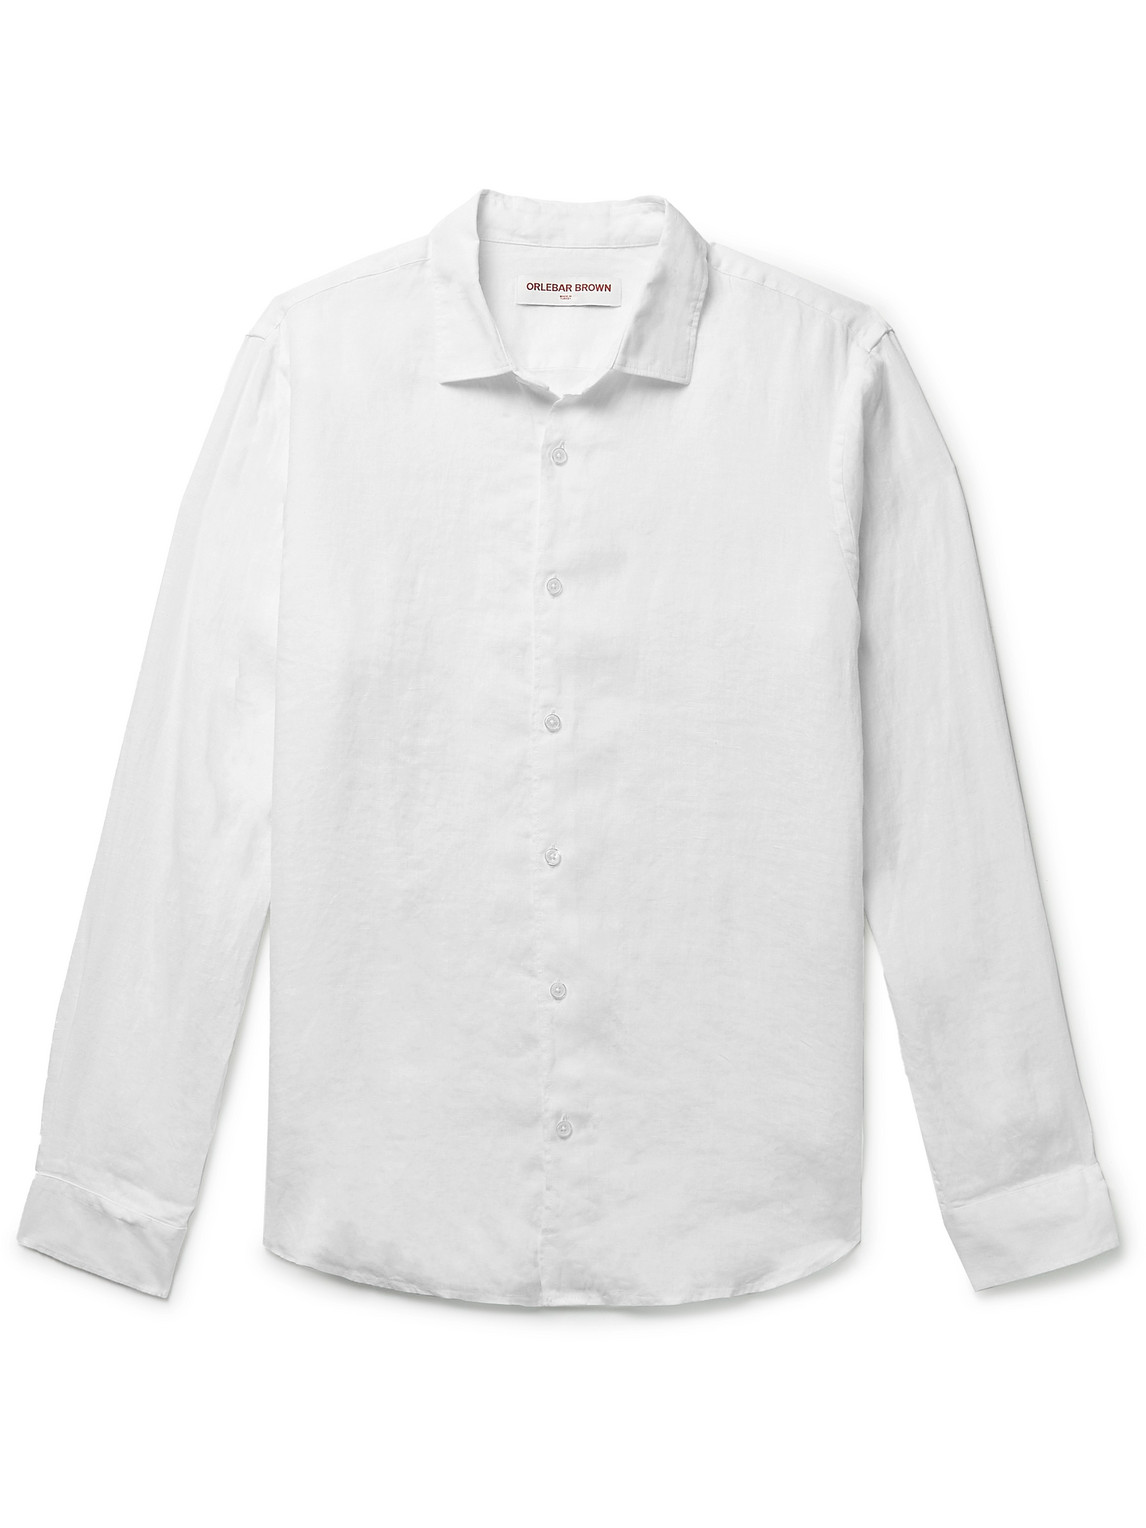 Orlebar Brown - Giles Linen Shirt - Men - White - M von Orlebar Brown